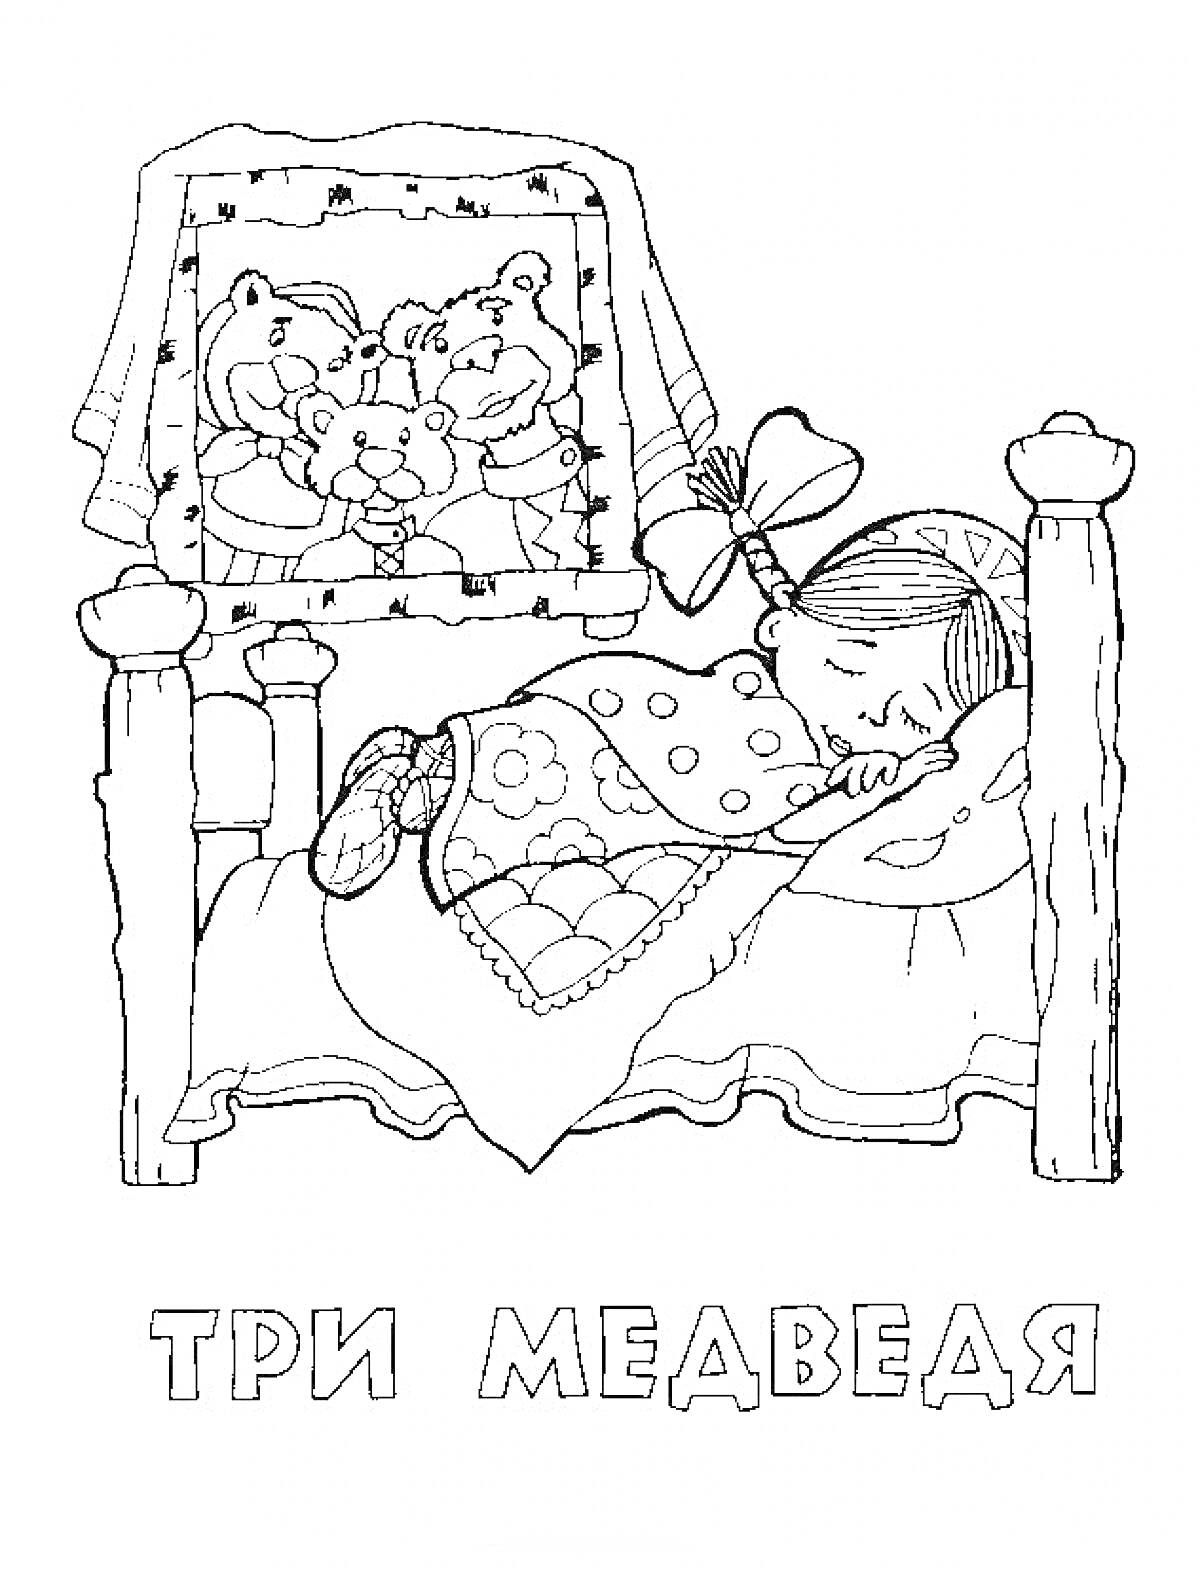 Спящая девочка на кровати с изображением трех медведей на стене